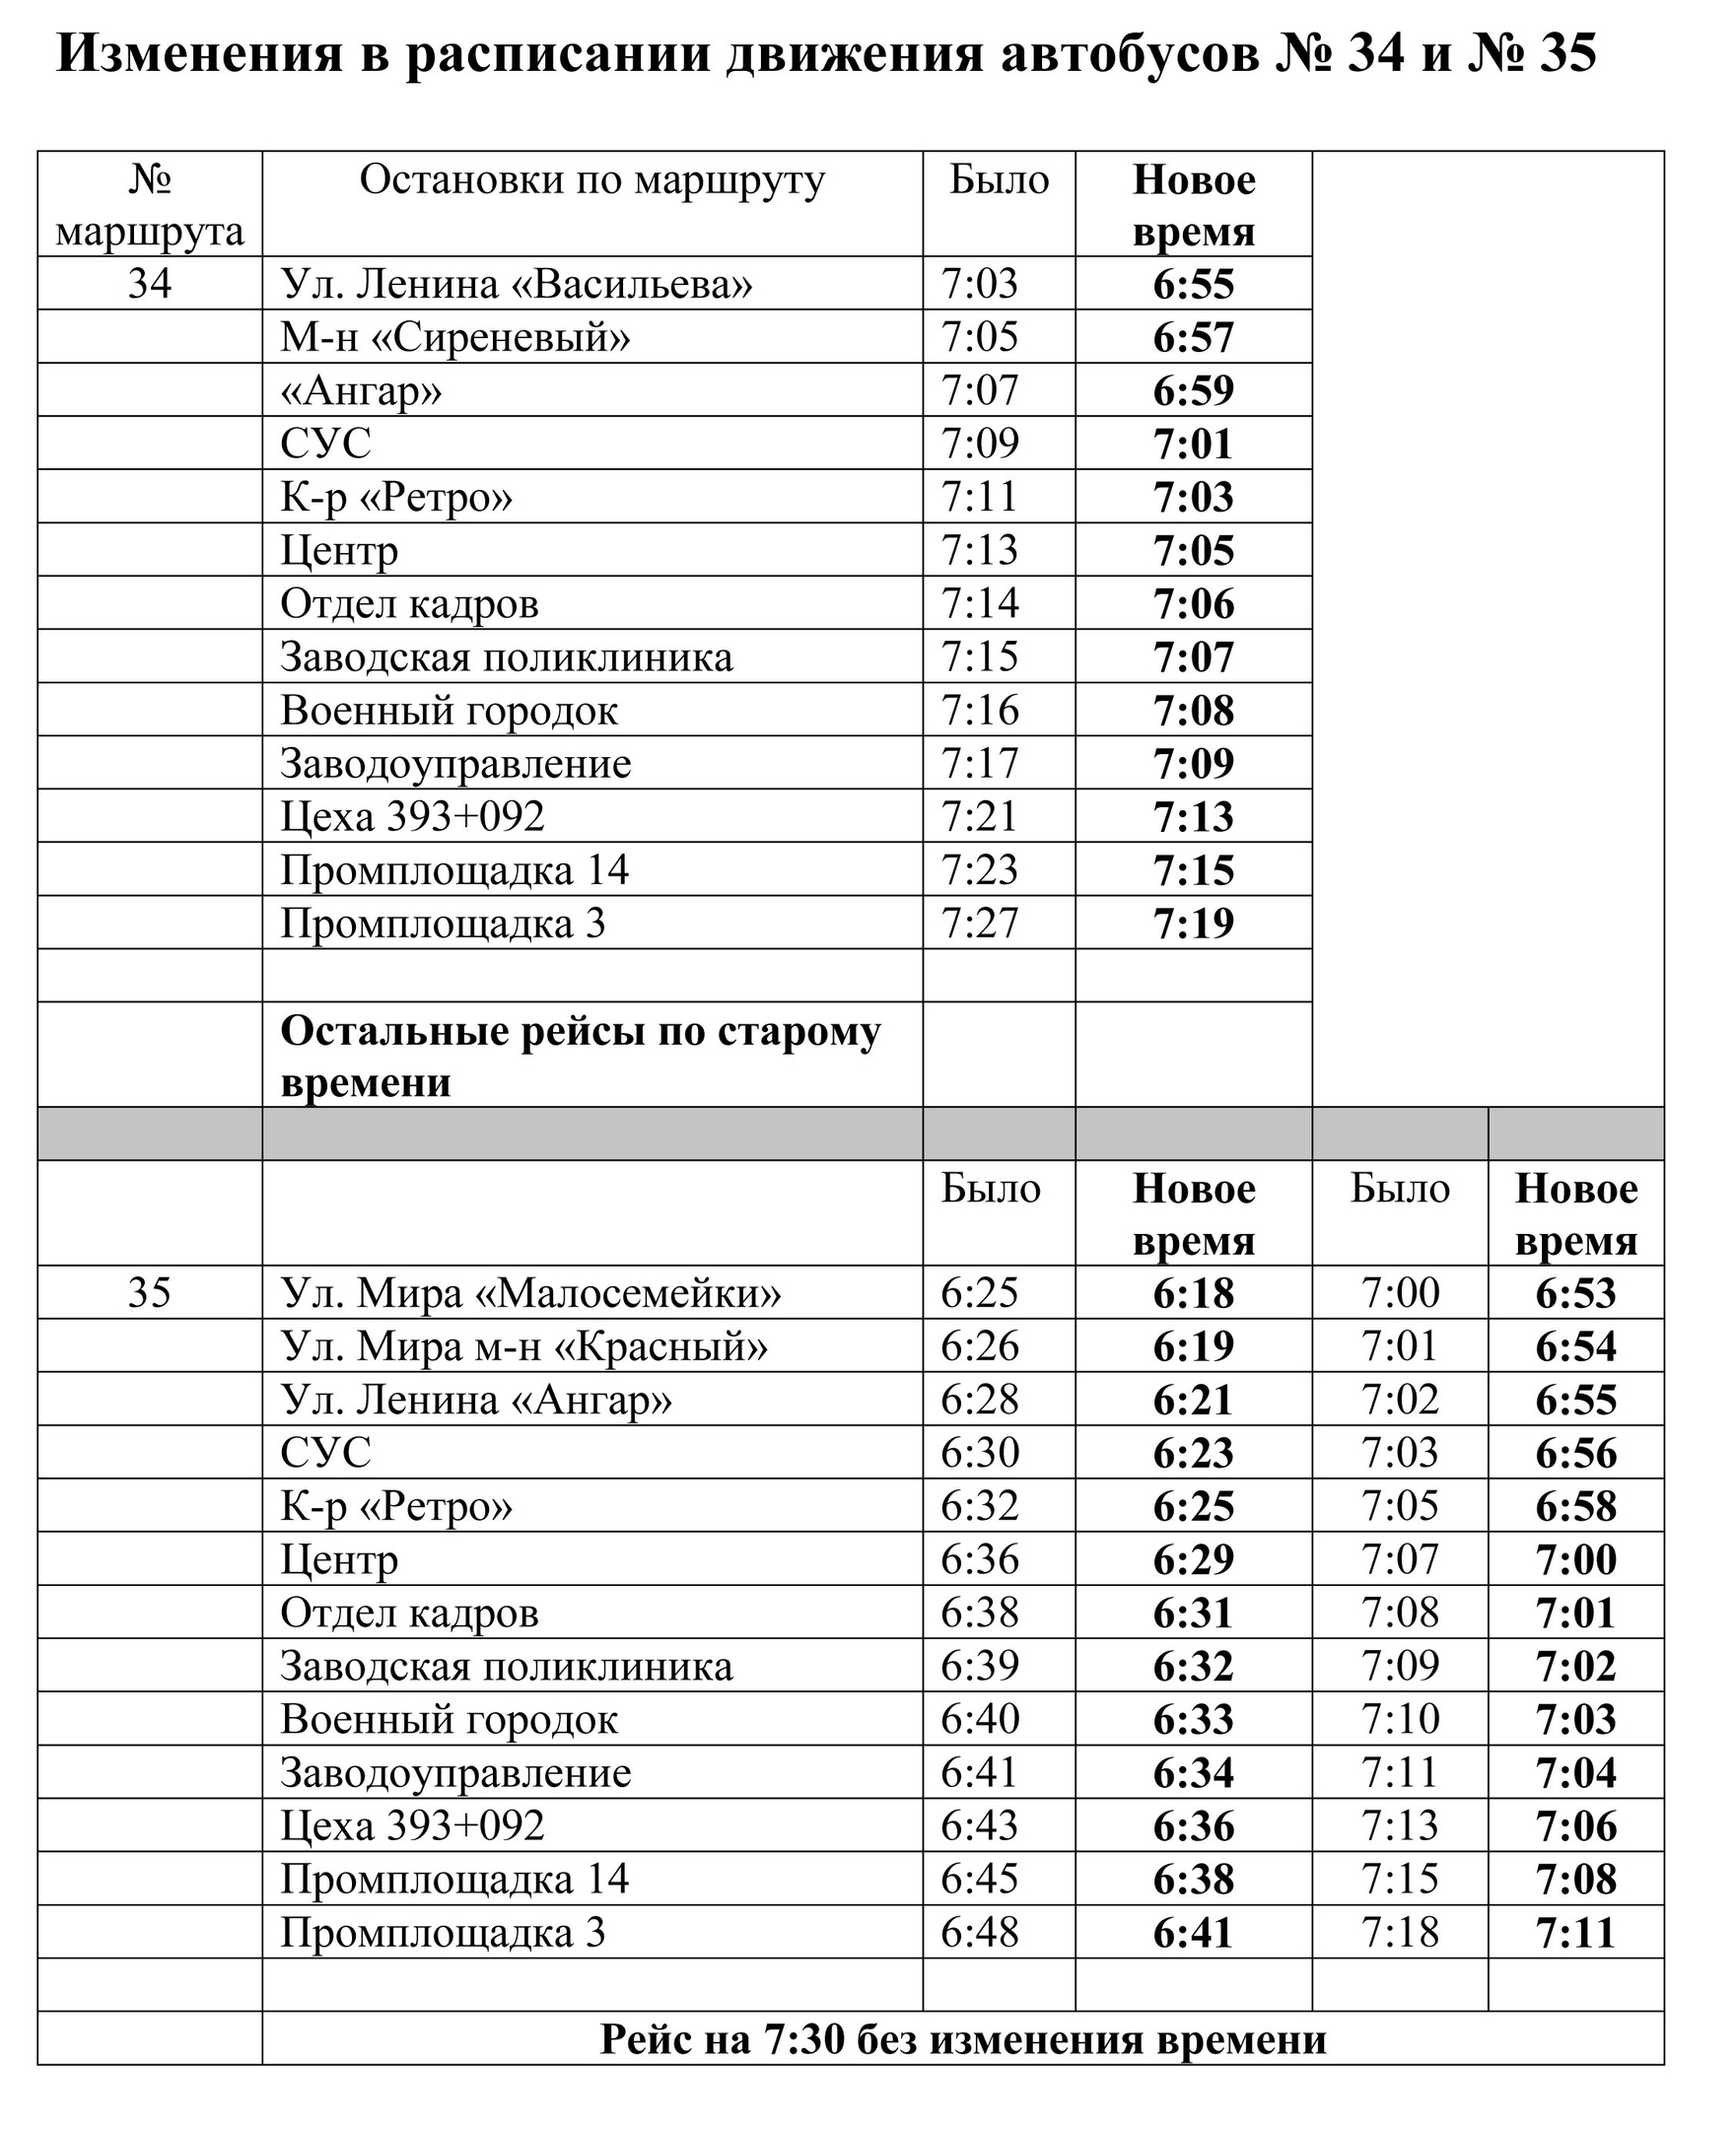 Автобус поликлиника Заводская. Расписание 3 автобуса Свирск. Утреннее расписание.